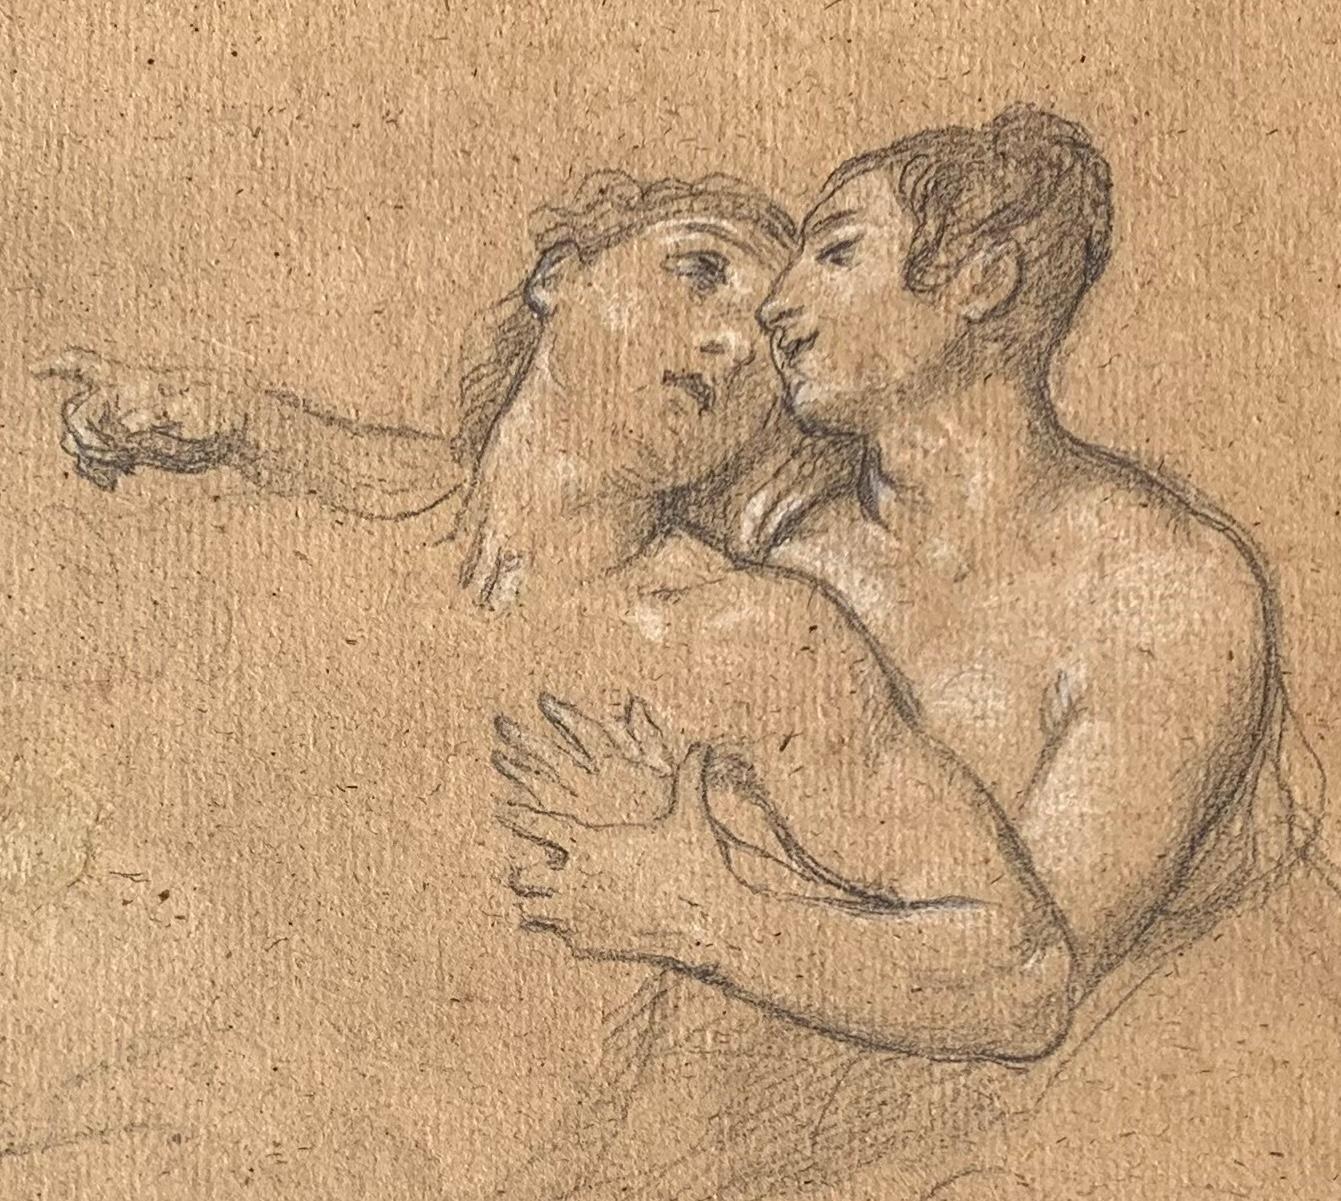 Disegno figurativo del romanticismo fiorentino matita su carta del XIX secolo - Romantic Art by Giuseppe Bezzuoli